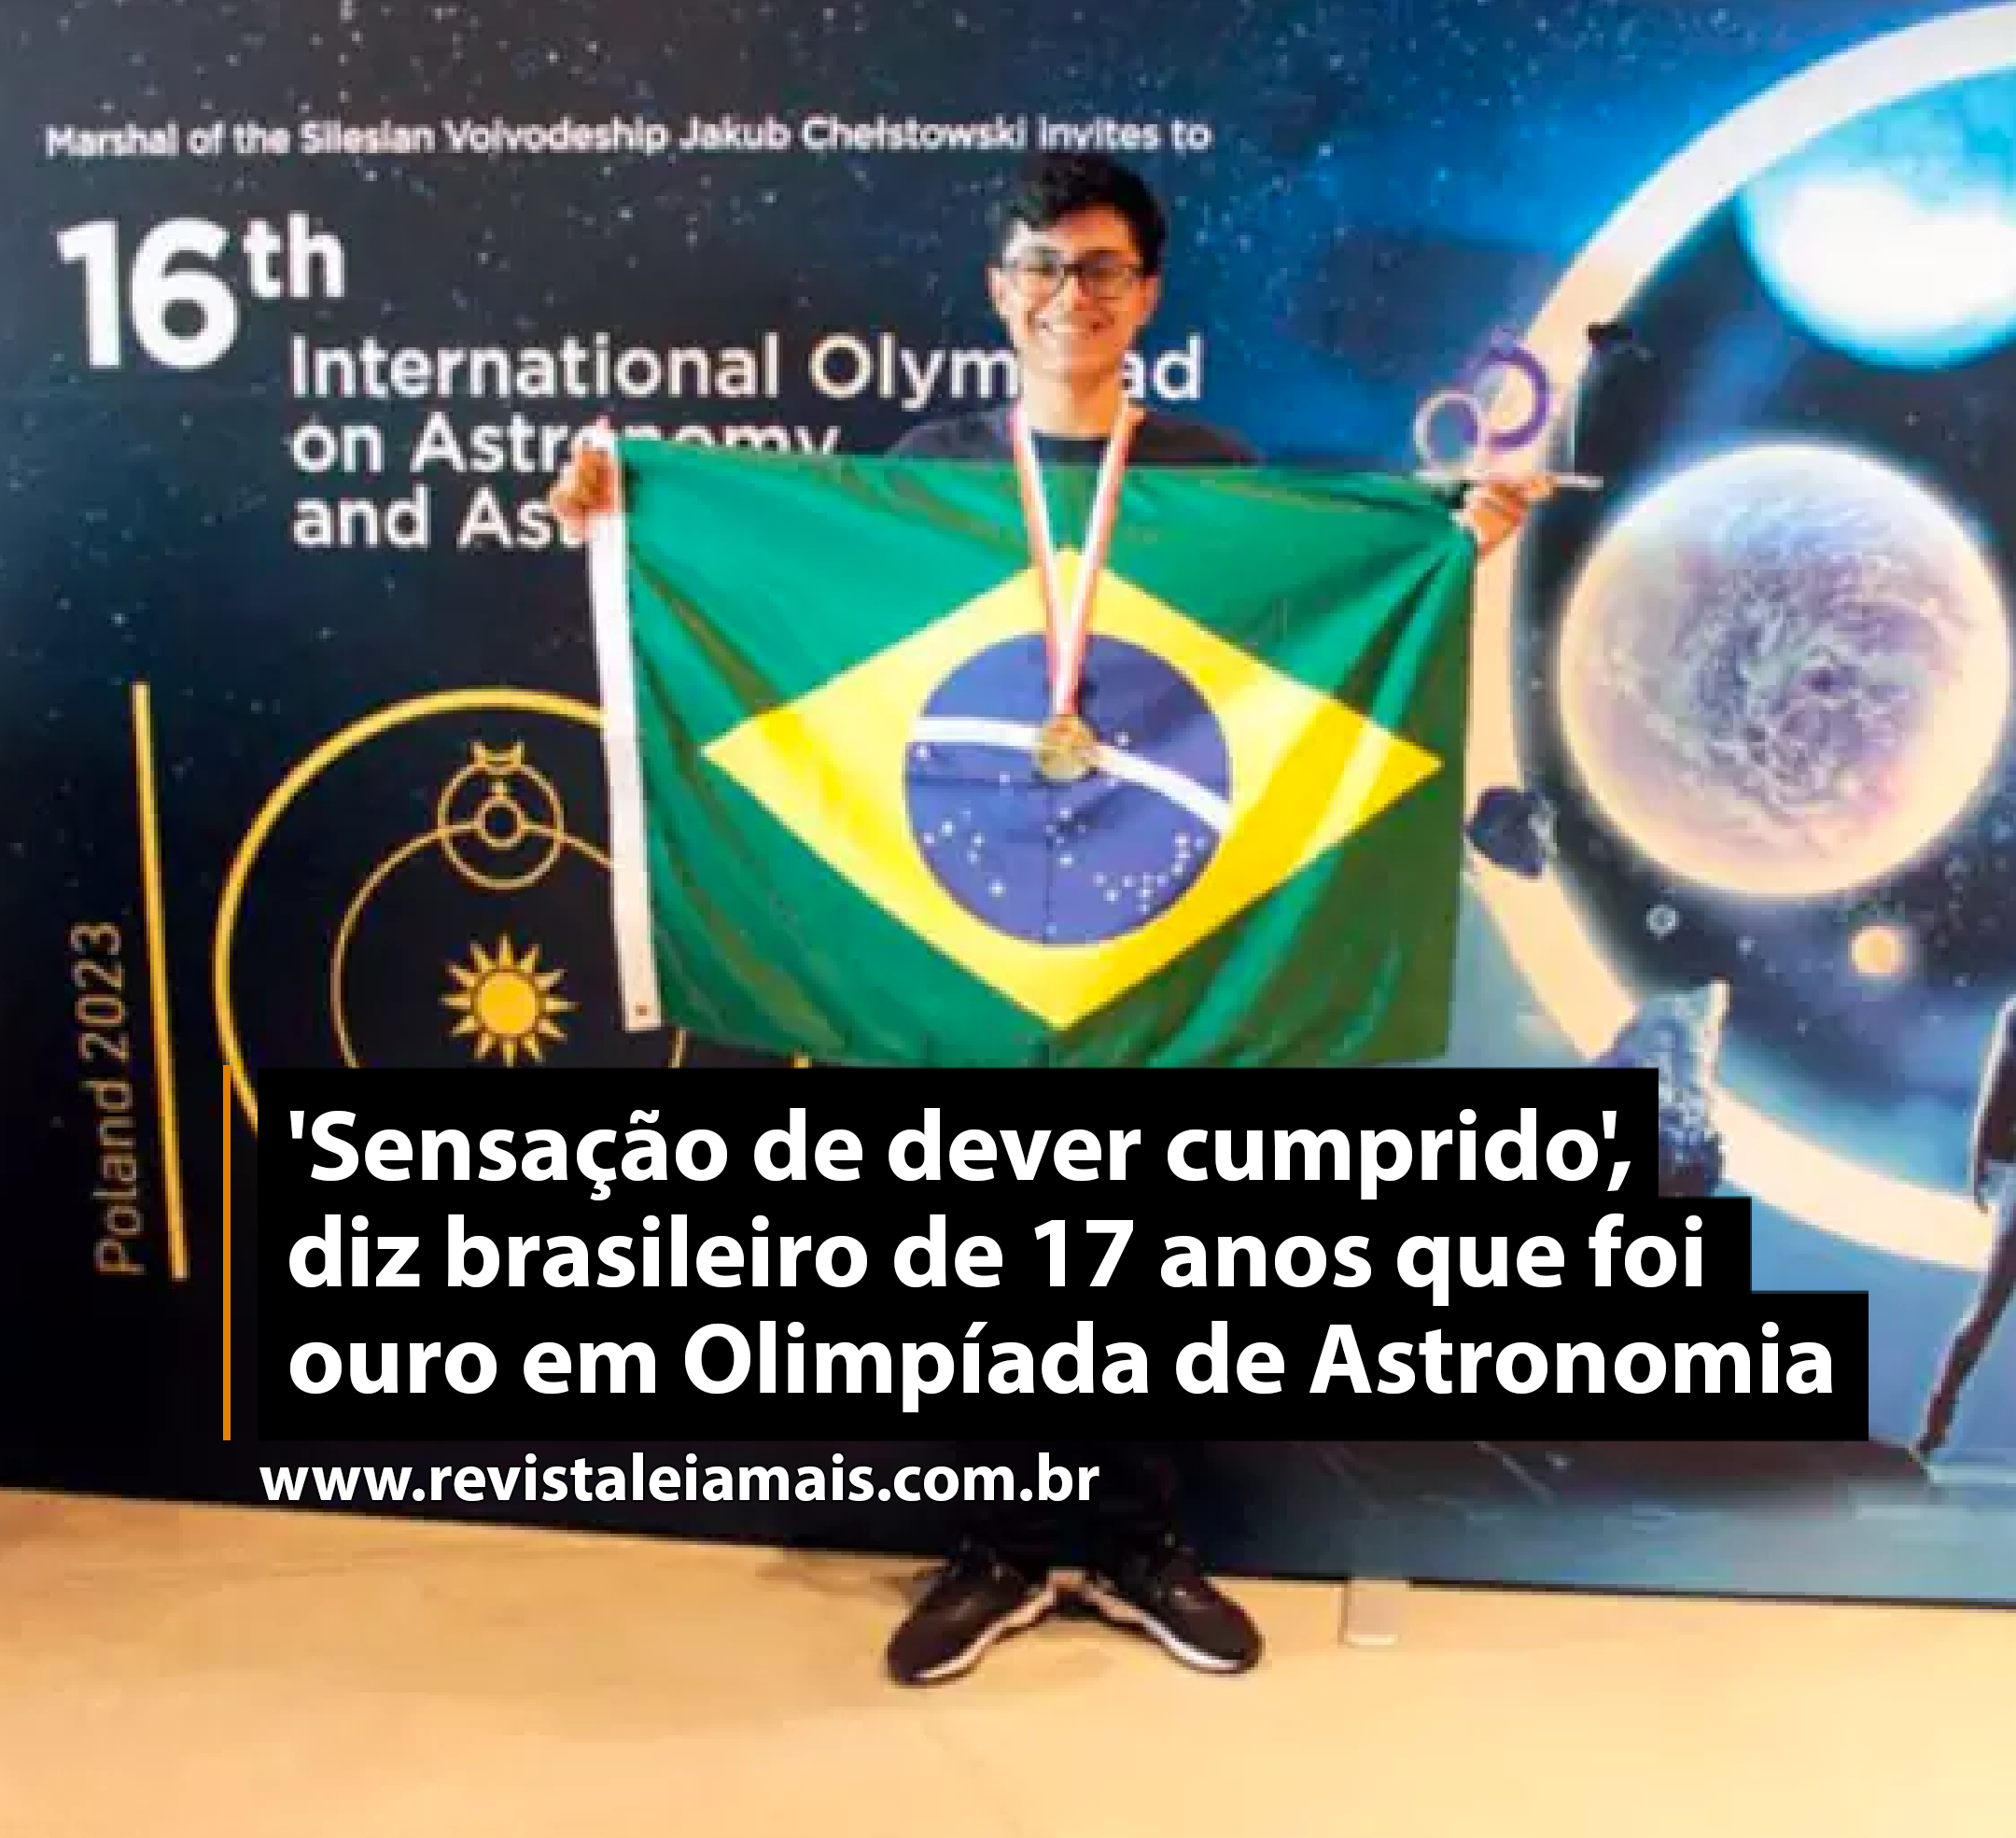 'Sensação de dever cumprido', diz brasileiro de 17 anos que foi ouro em Olimpíada de Astronomia